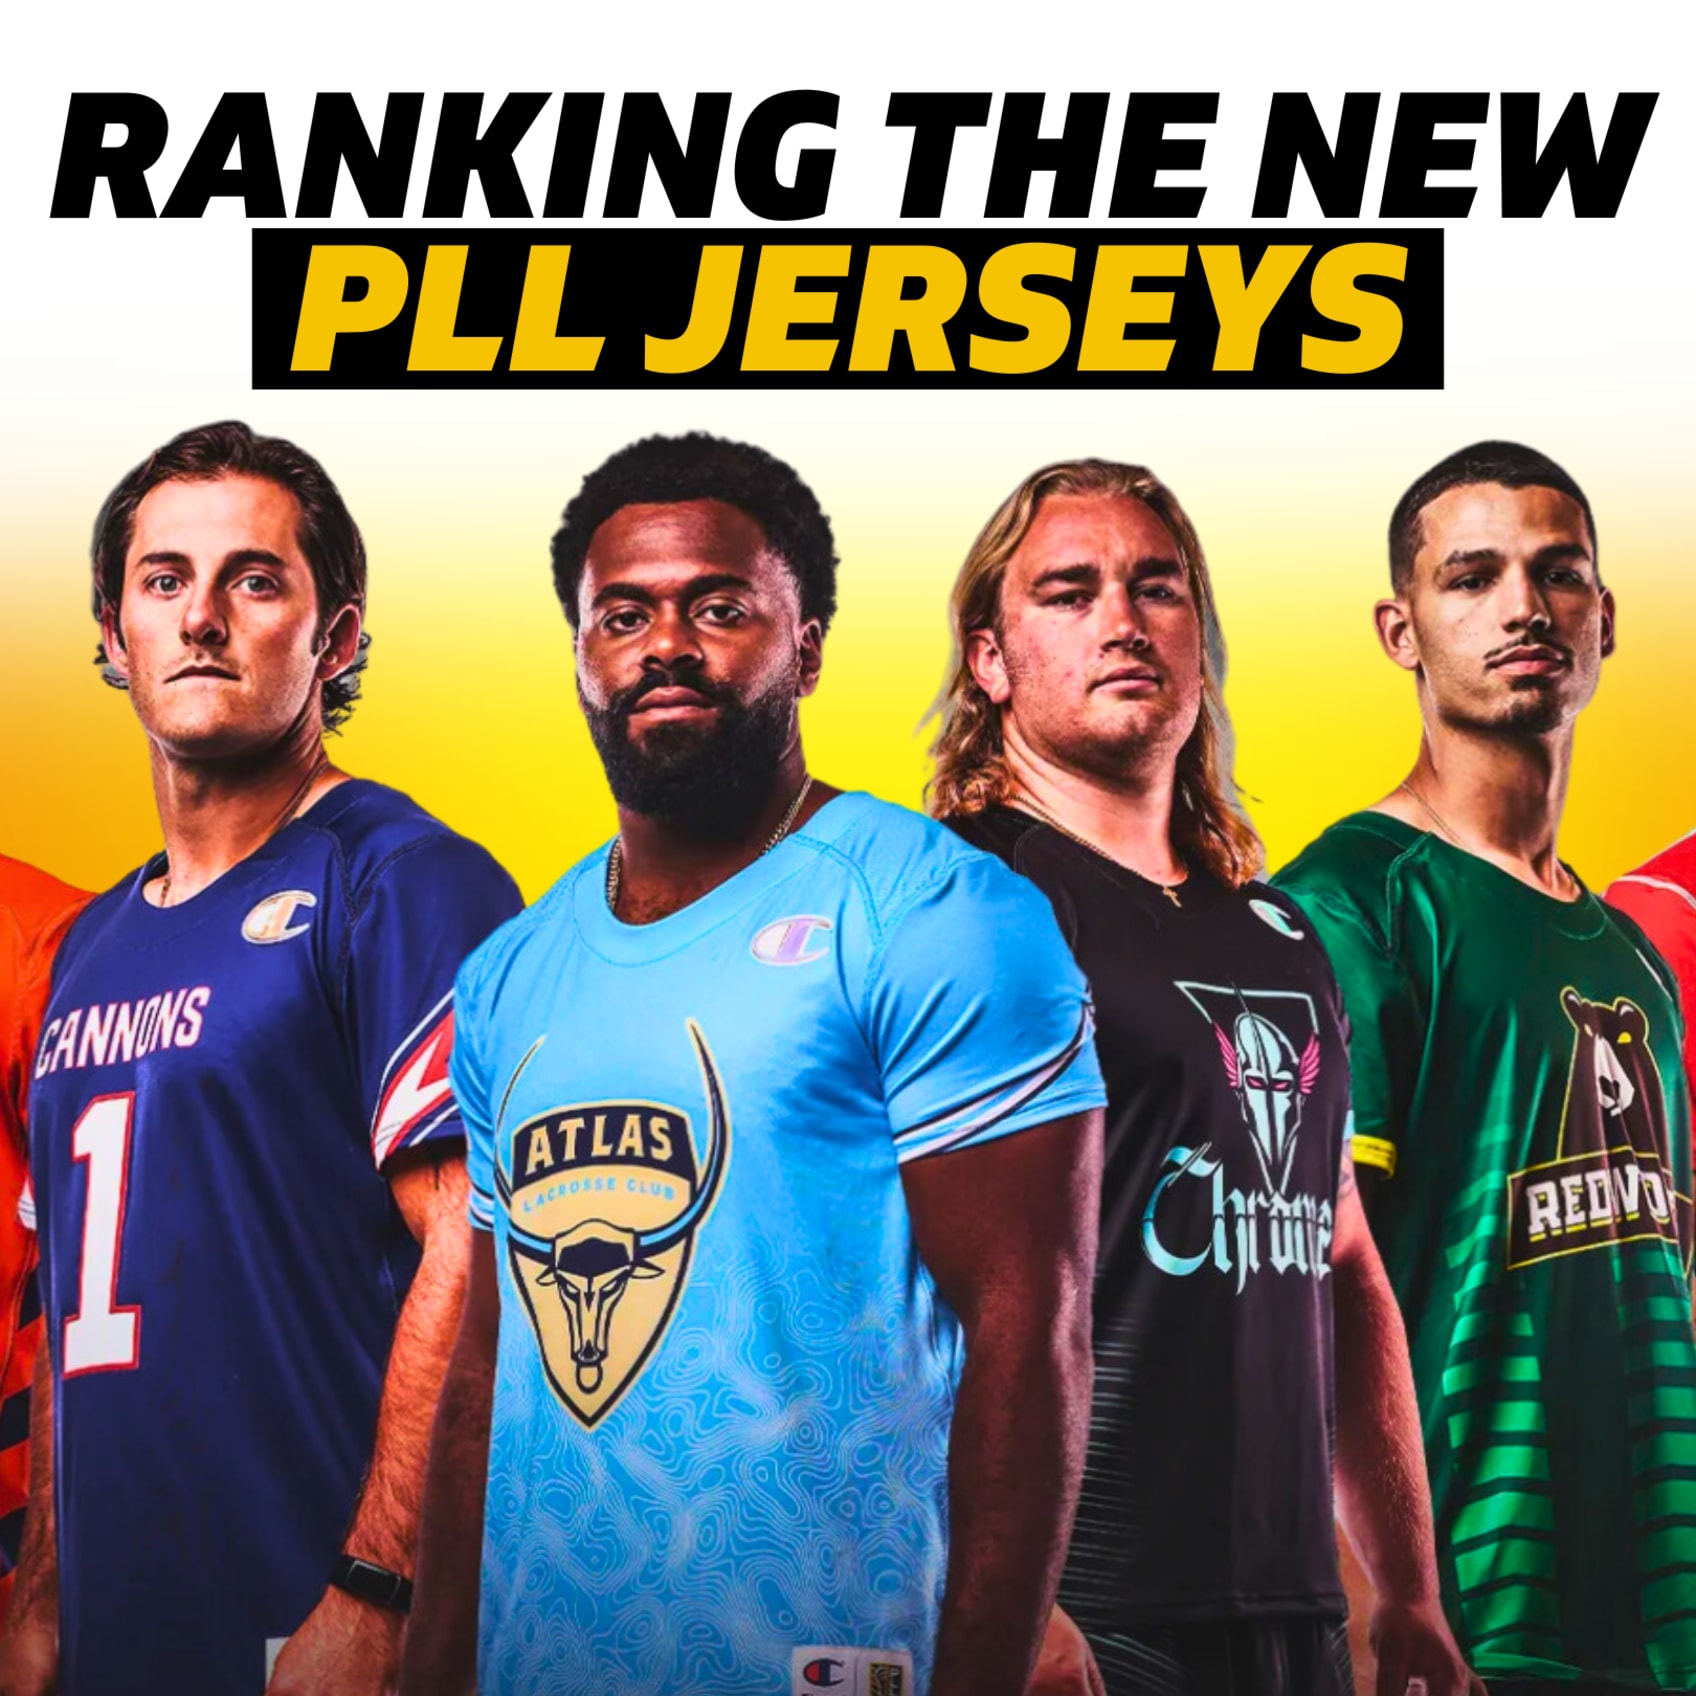 PLL Lacrosse Jerseys Ranked - Premier Lacrosse League